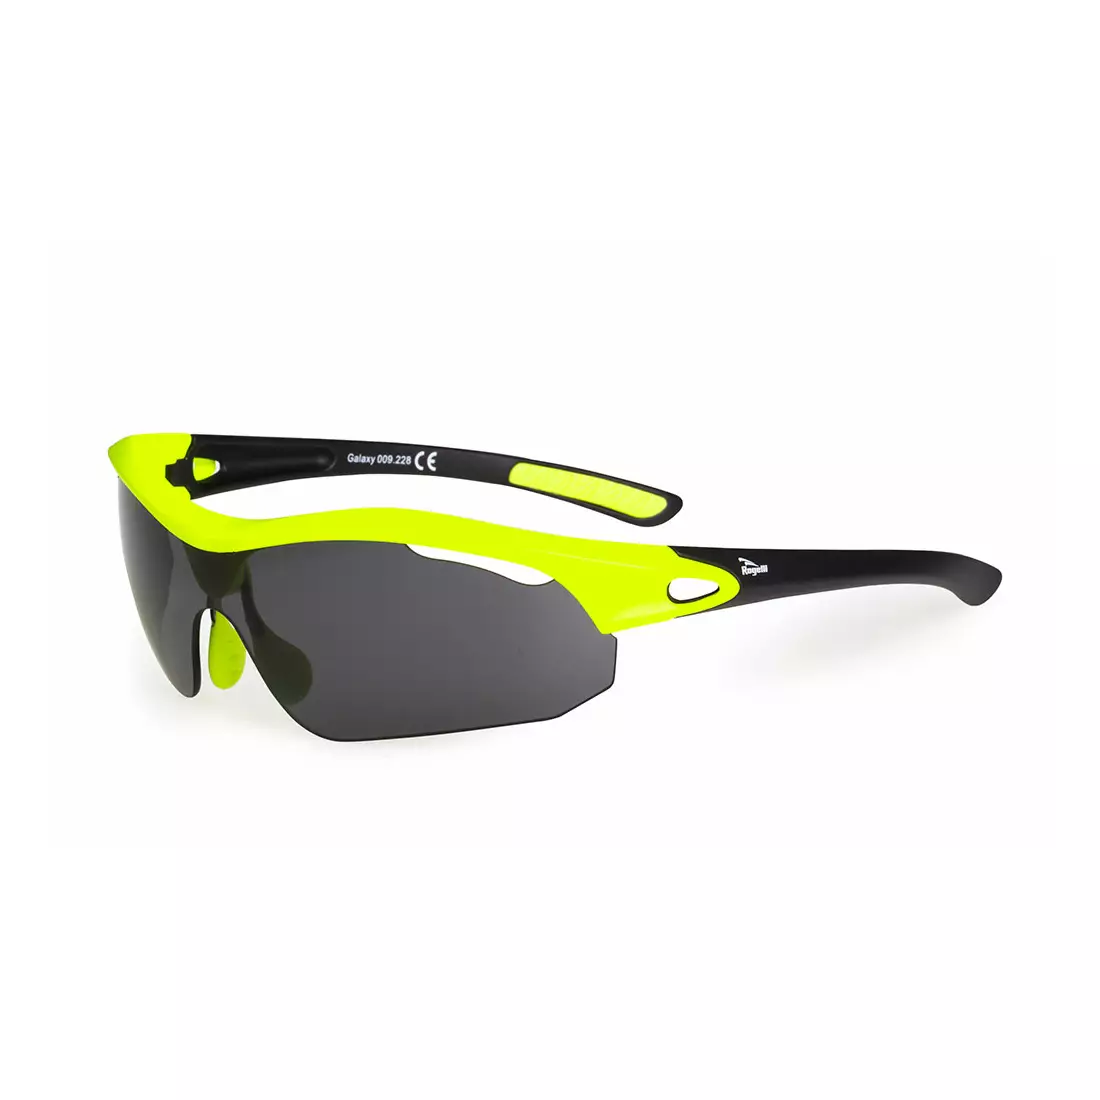 ROGELLI SS17 009.228 GALAXY fluoreszkáló szemüveg